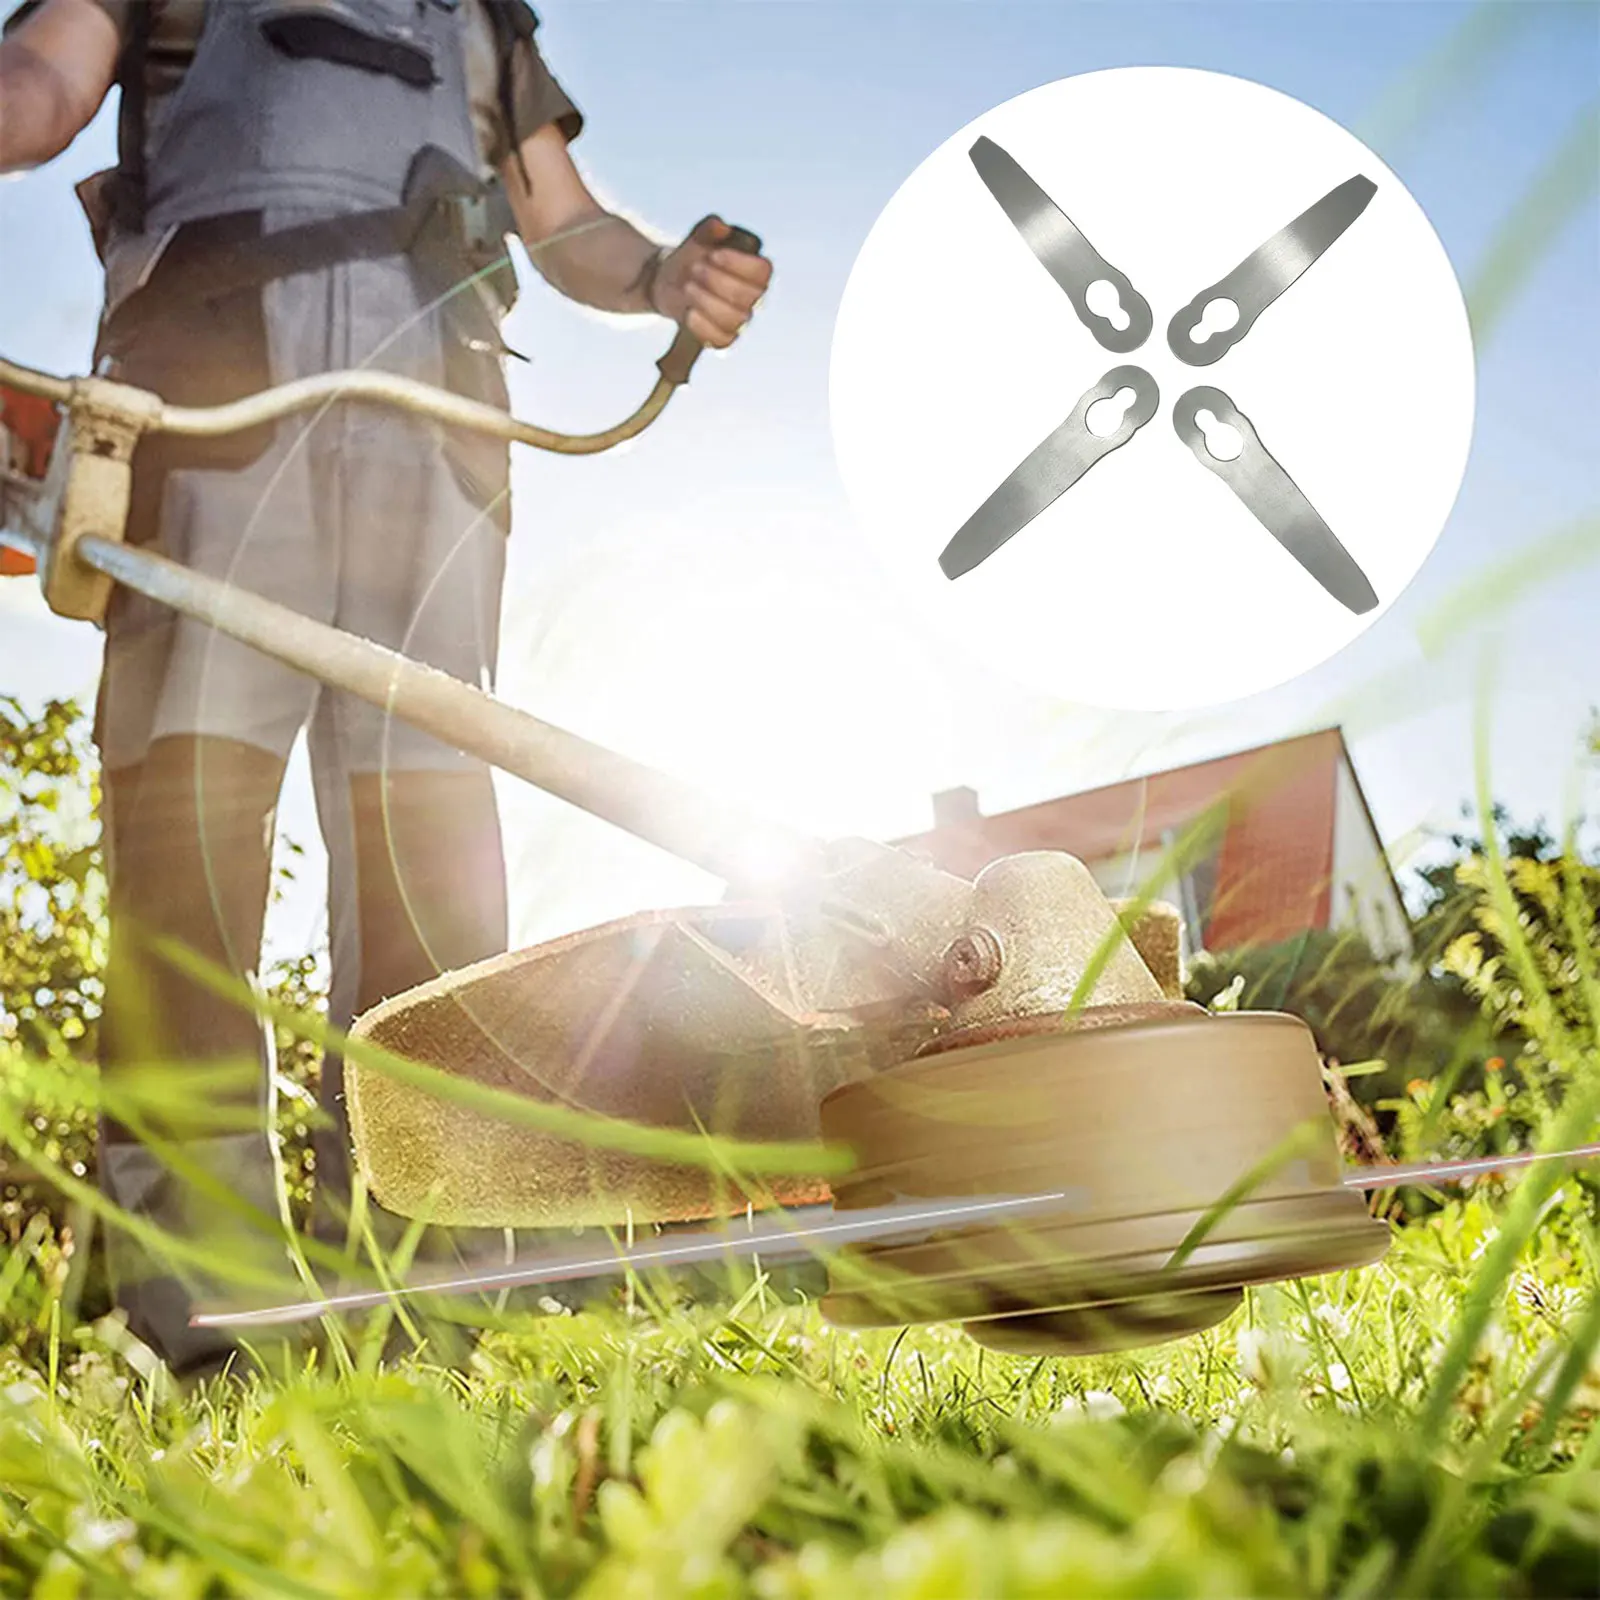 

1Pcs Grass Trimmer Blade Garden Lawn Mower for Ferrex Aldi Poly Cut 2-2 FSA 45 for Home Garden Tool Accessories